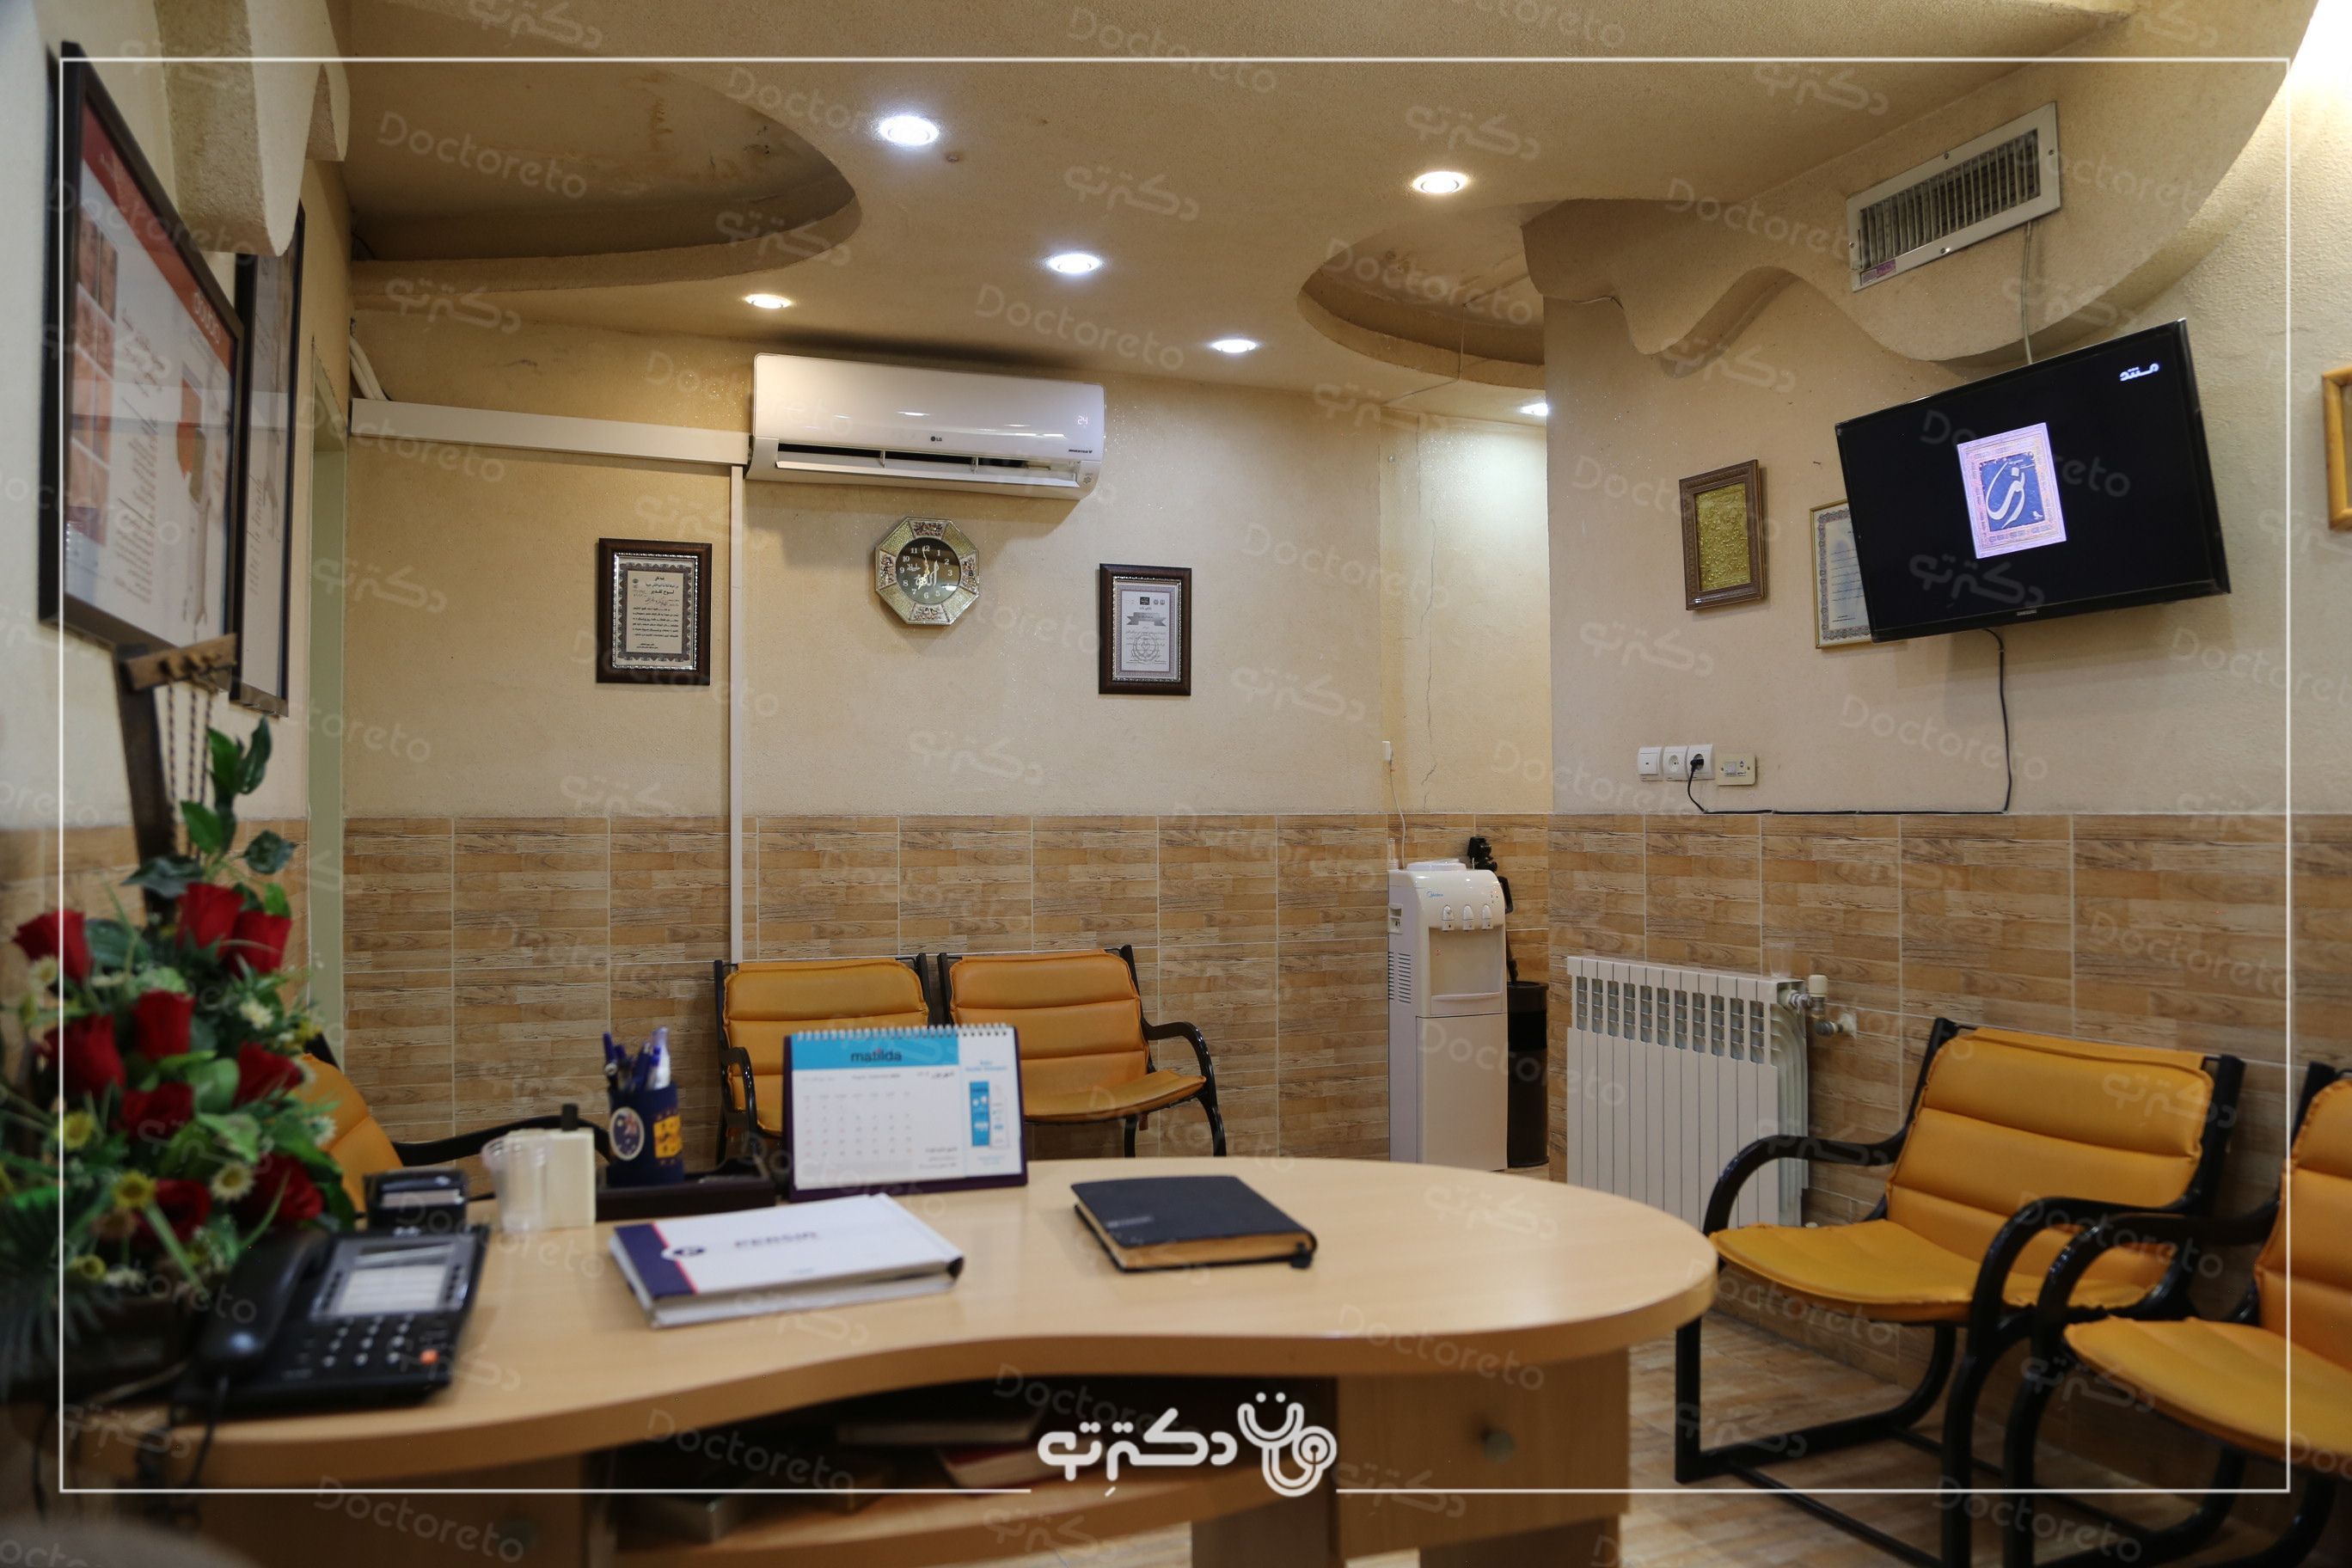 مزونیدلینگ با مزوتراپی برند بایو اسکین (1جلسه) ✨ دکتر هما رجایی خواه در شیراز 6